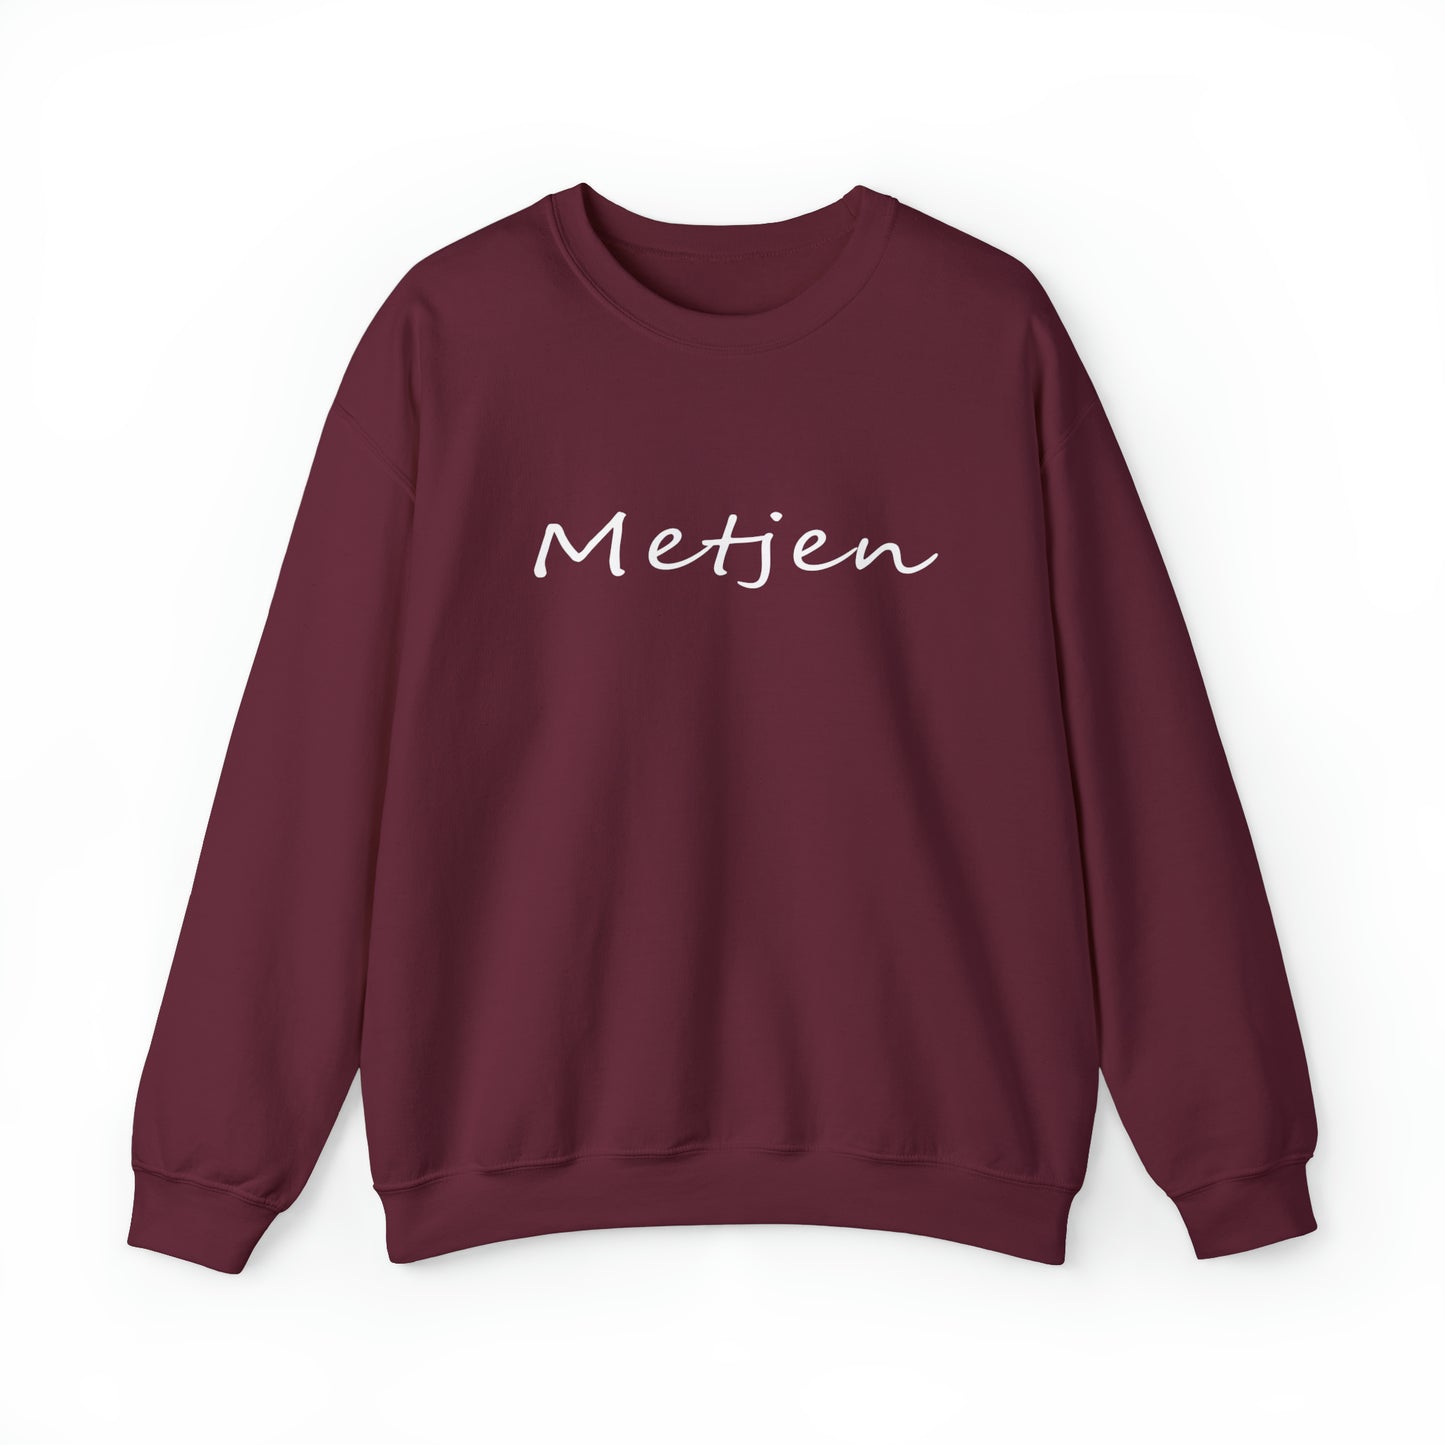 Int Oilsjters - Sweater - Metjen